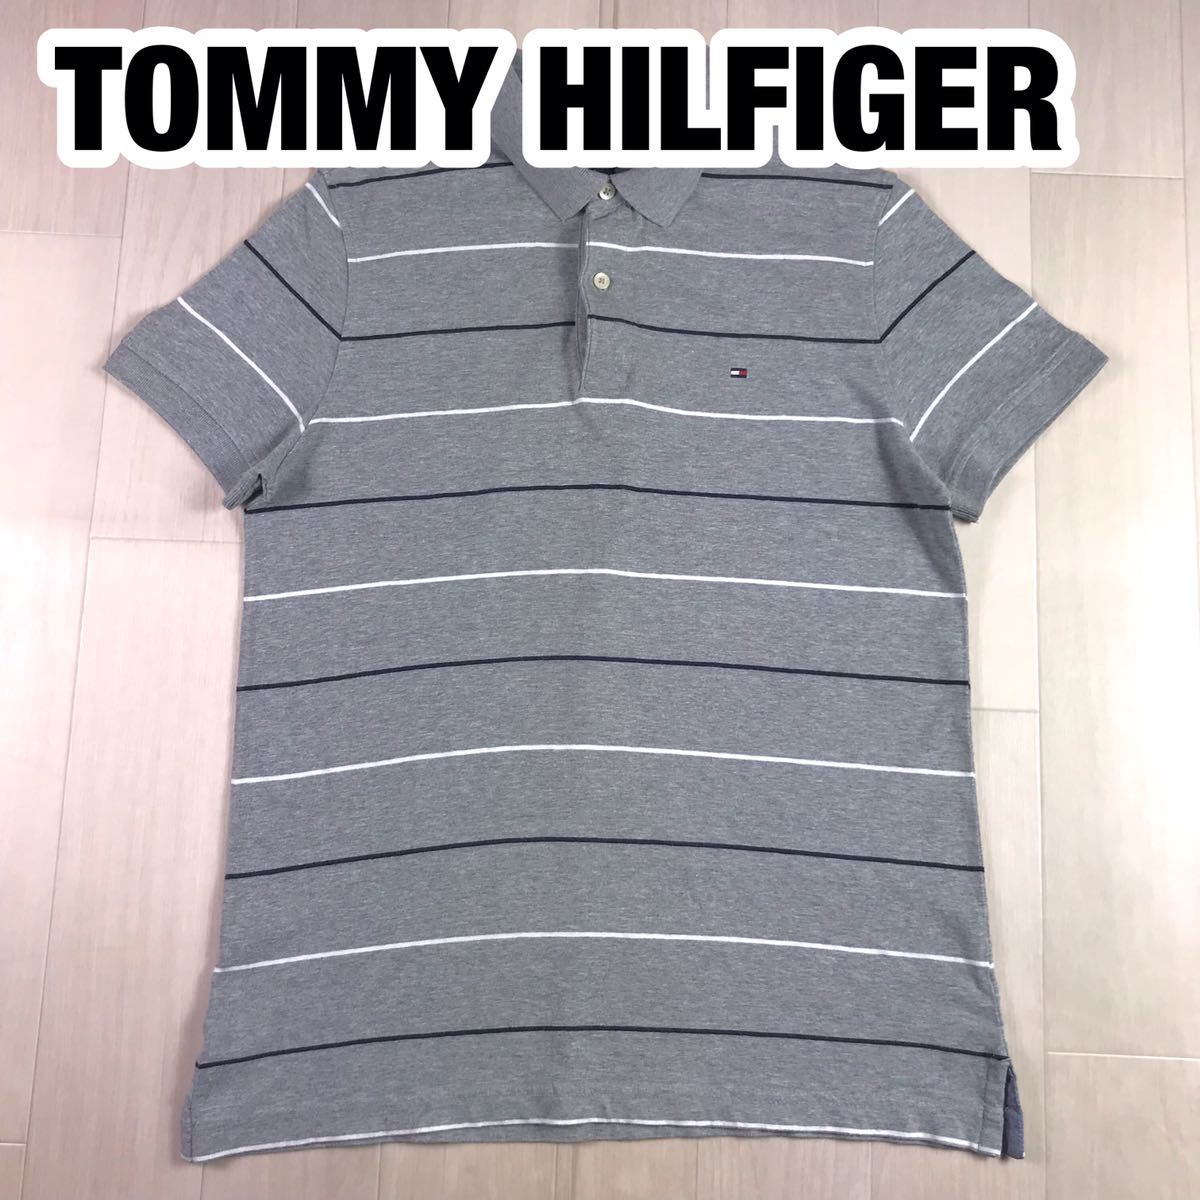 TOMMY HILFIGER トミー ヒルフィガー 半袖 ポロシャツ M ボーダー柄 マルチカラー グレー×ネイビー×ホワイト 刺繍ロゴの画像1